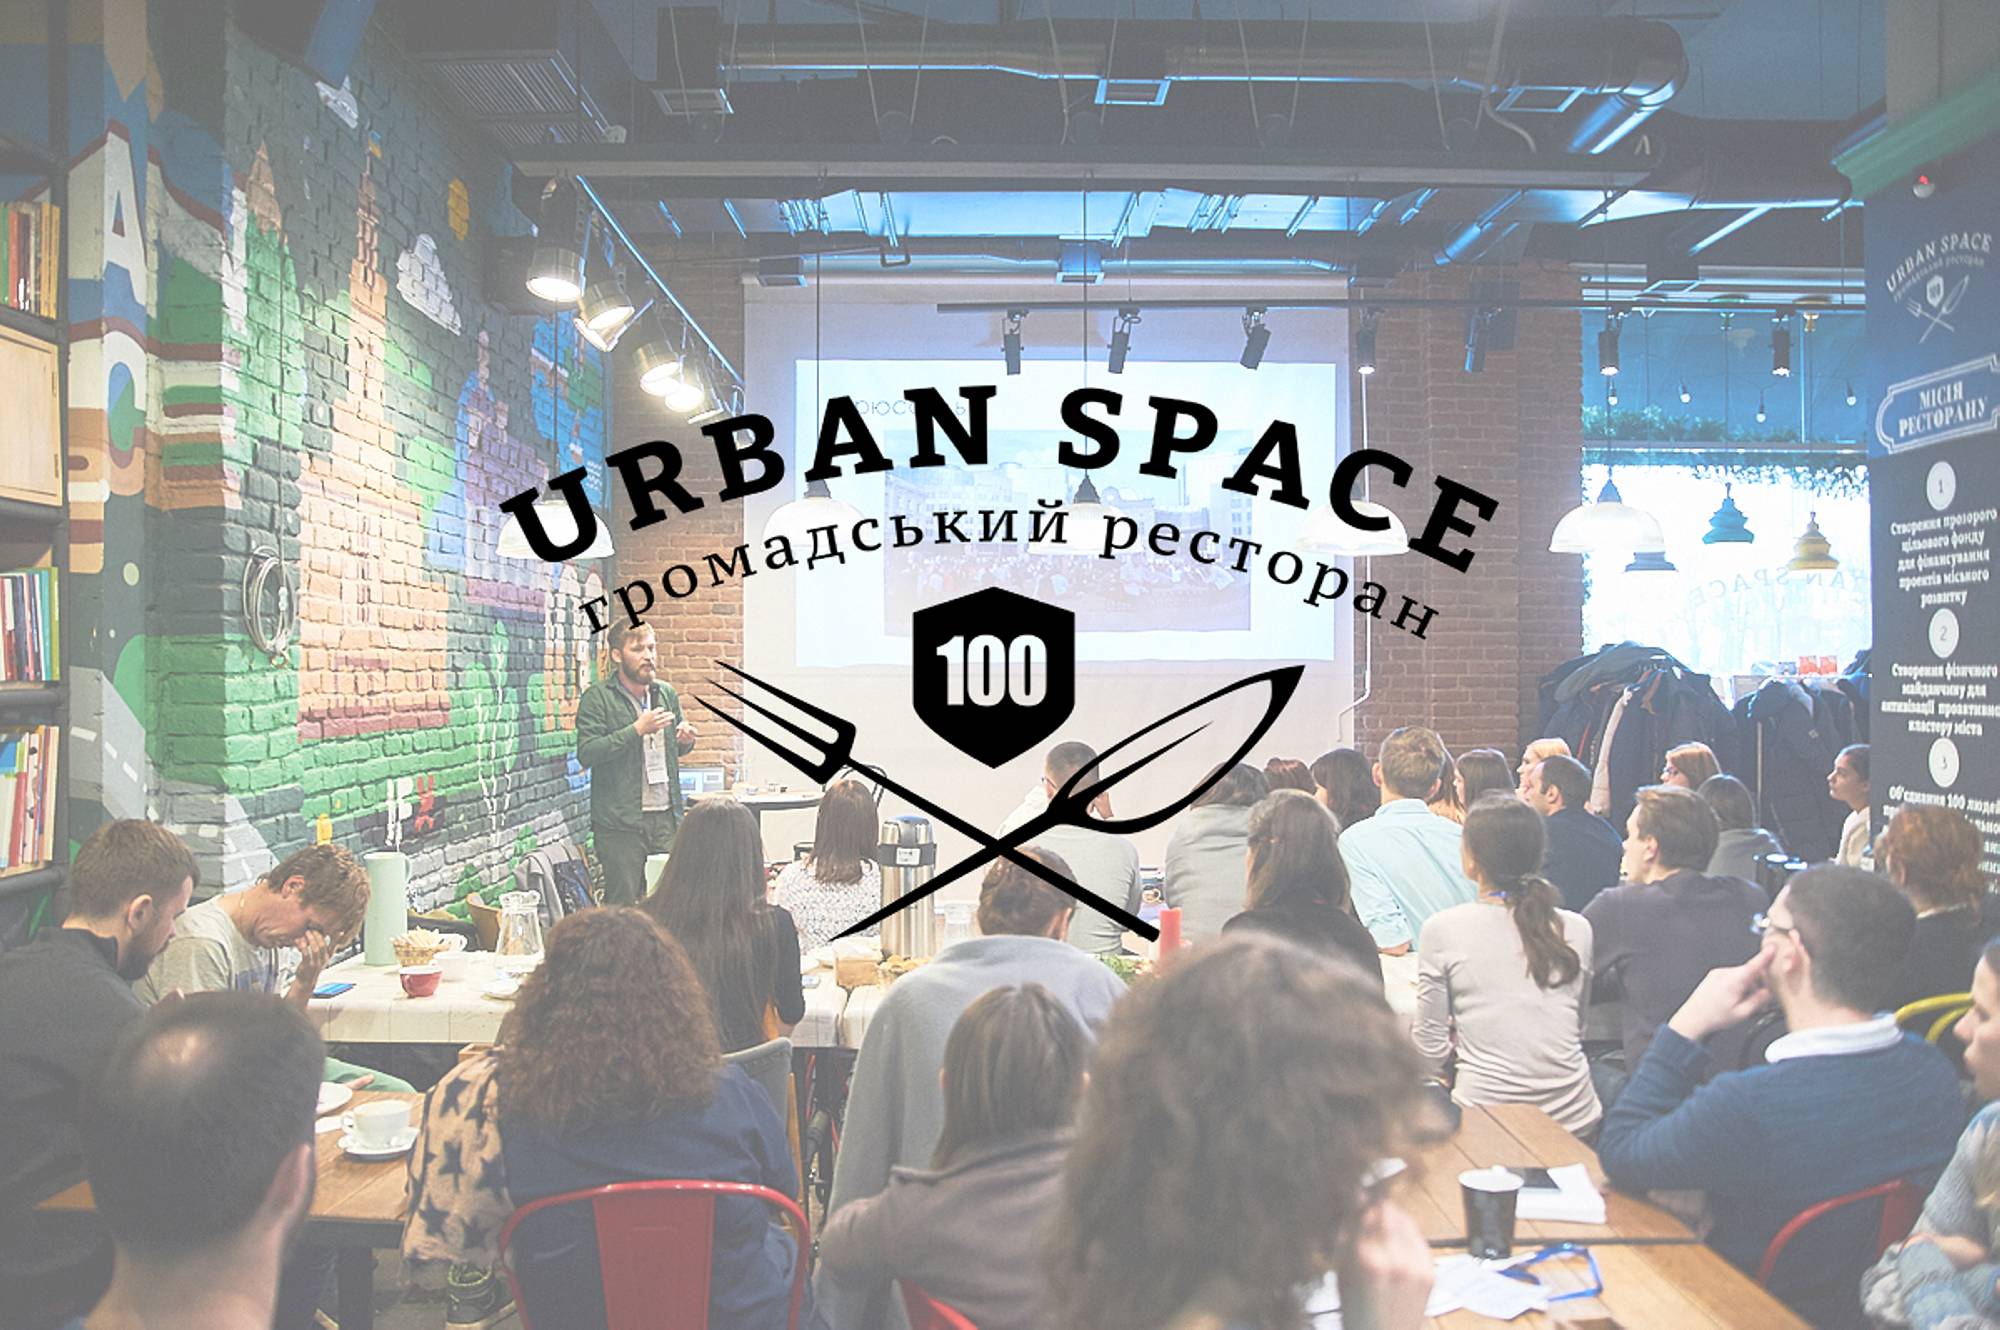 Франківський “Urban Space 100” представлять на архітектурній виставці в Берліні